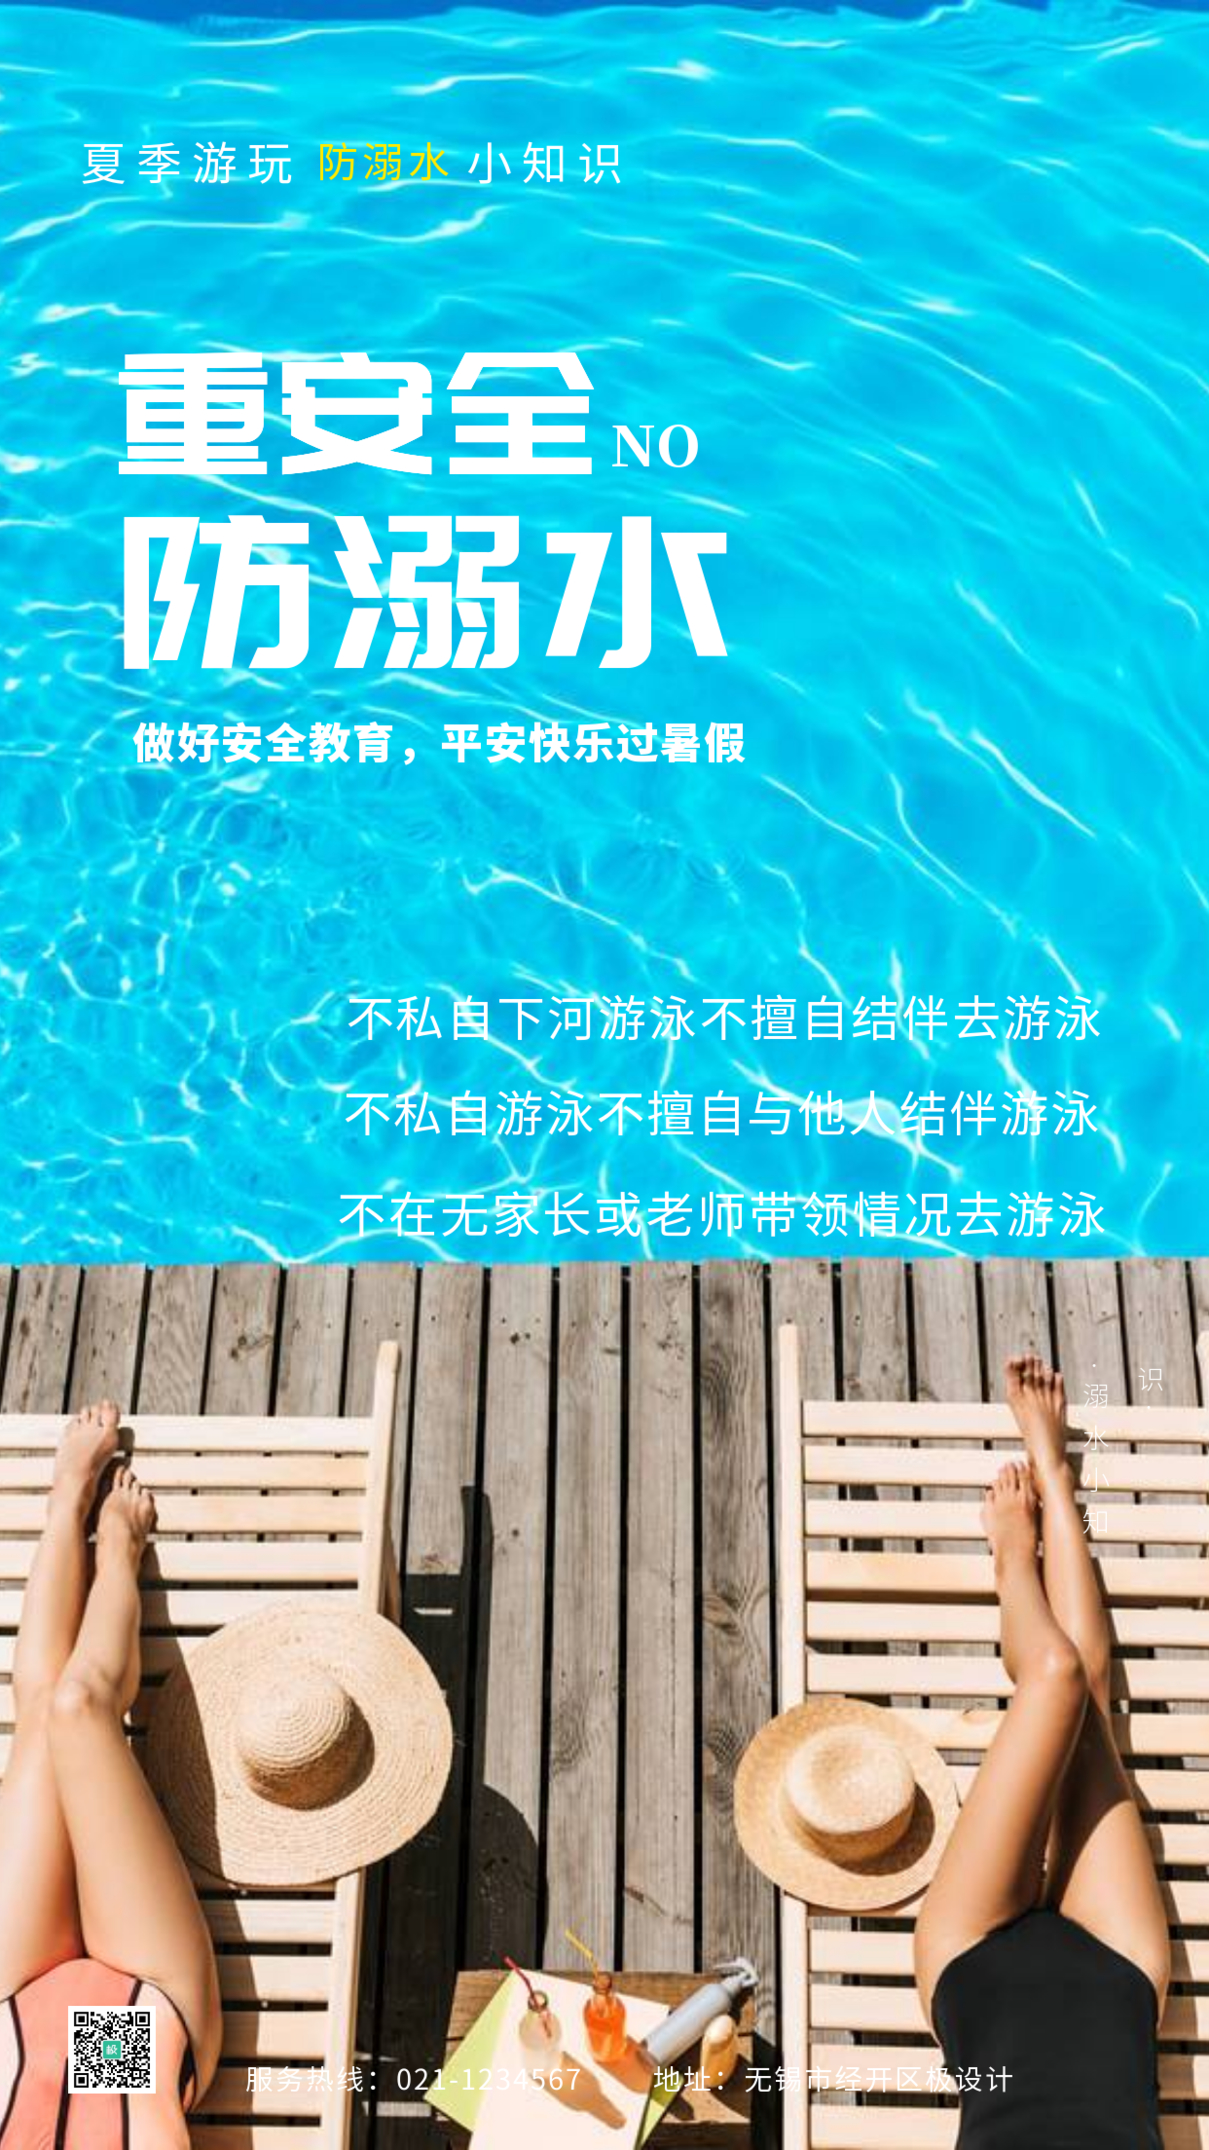 夏季玩水防溺水通告活动推广摄影图海报